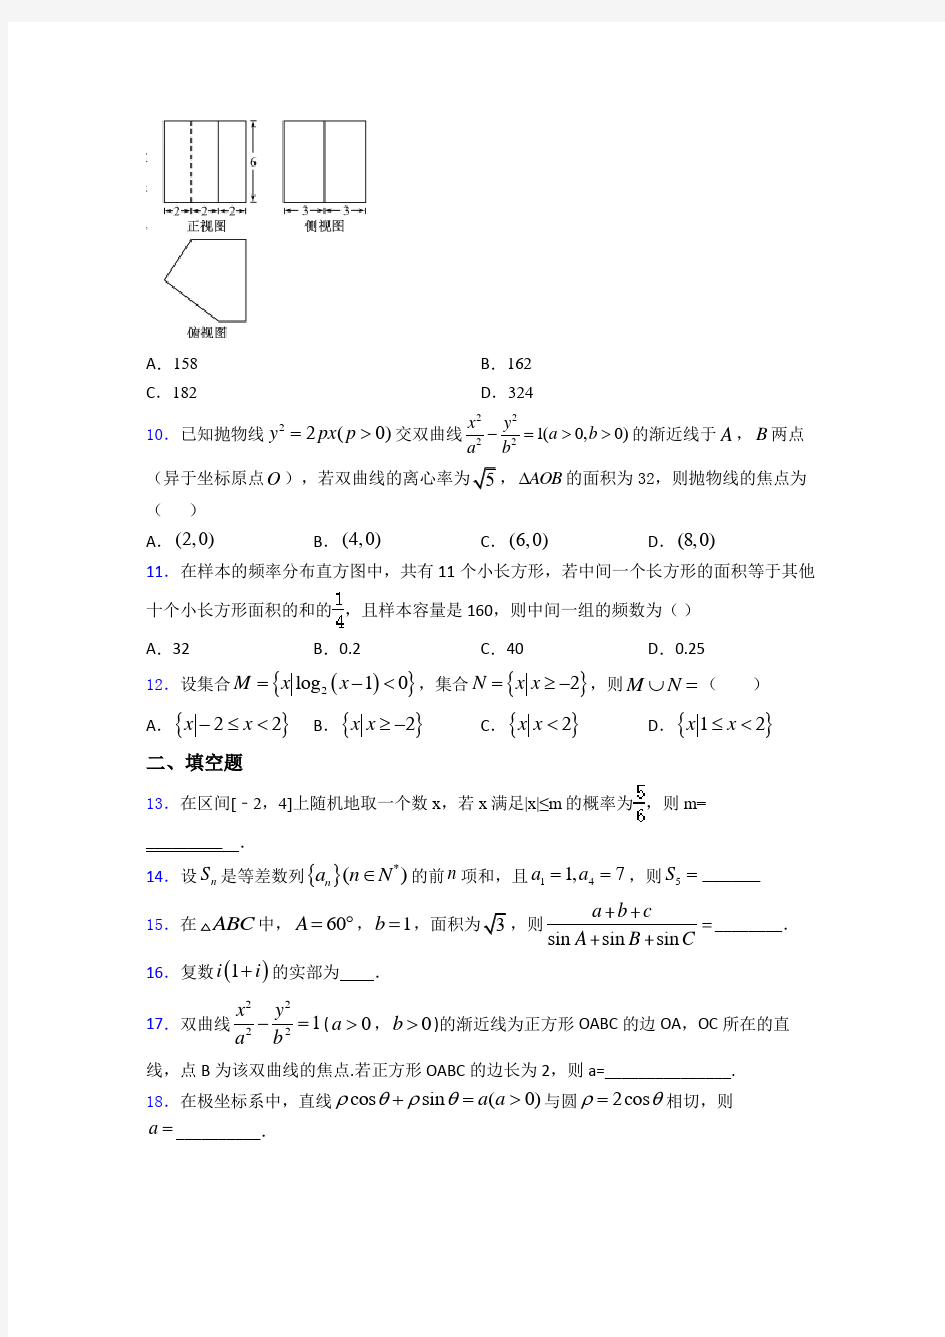 【典型题】数学高考试卷(带答案)